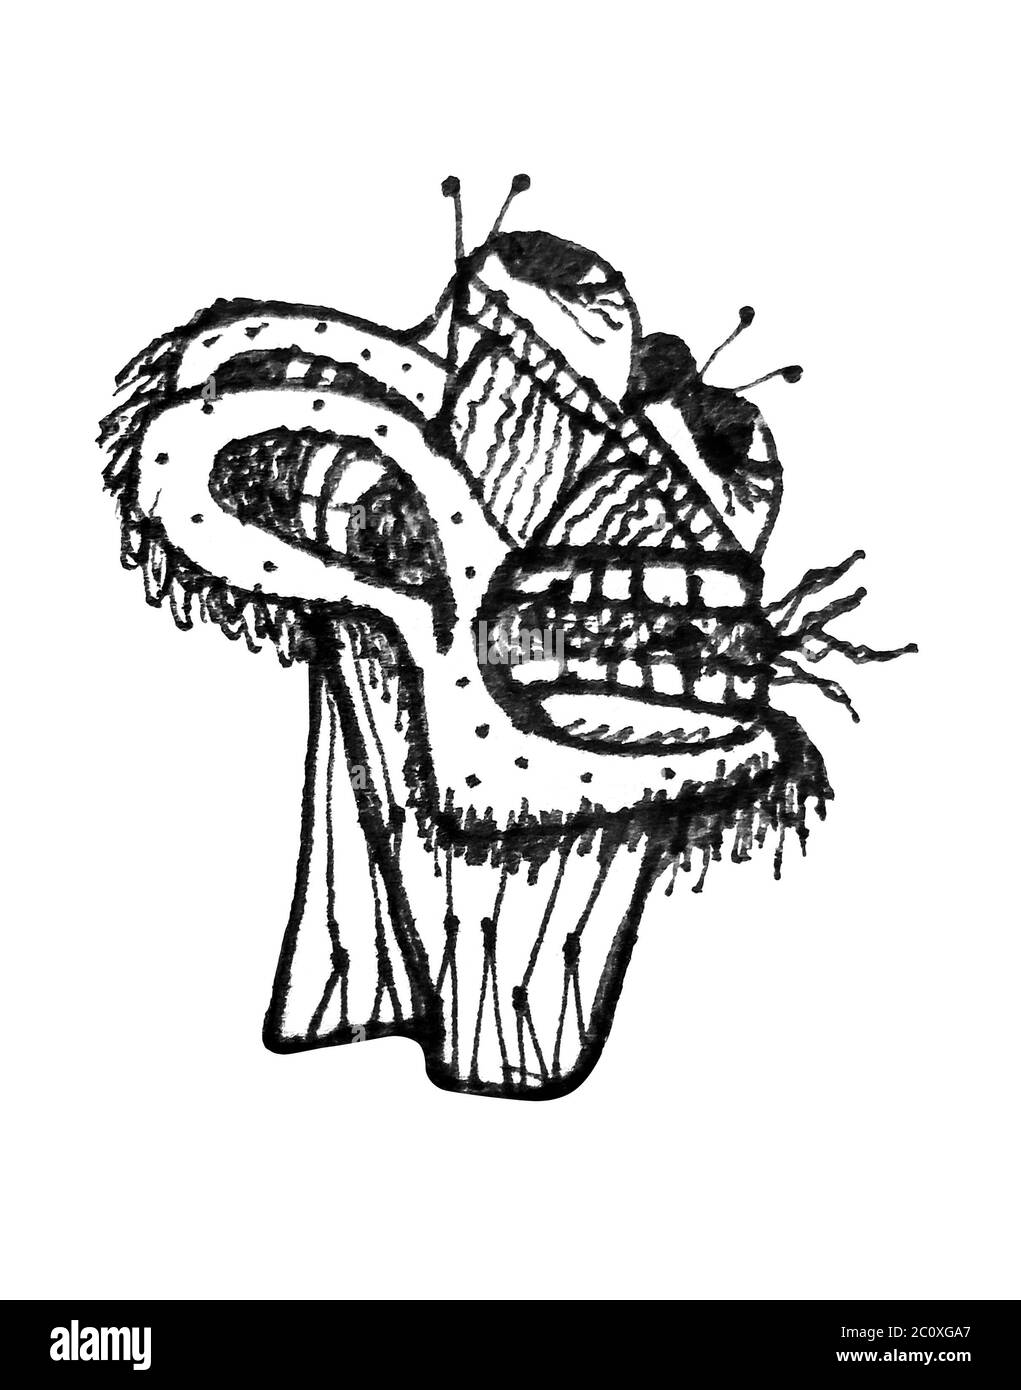 Dibujo a Lápiz en blanco y negro ilustración raster de fantasía en vista  lateral de la cabeza del monstruo disparo aislado en fondo blanco  Fotografía de stock - Alamy